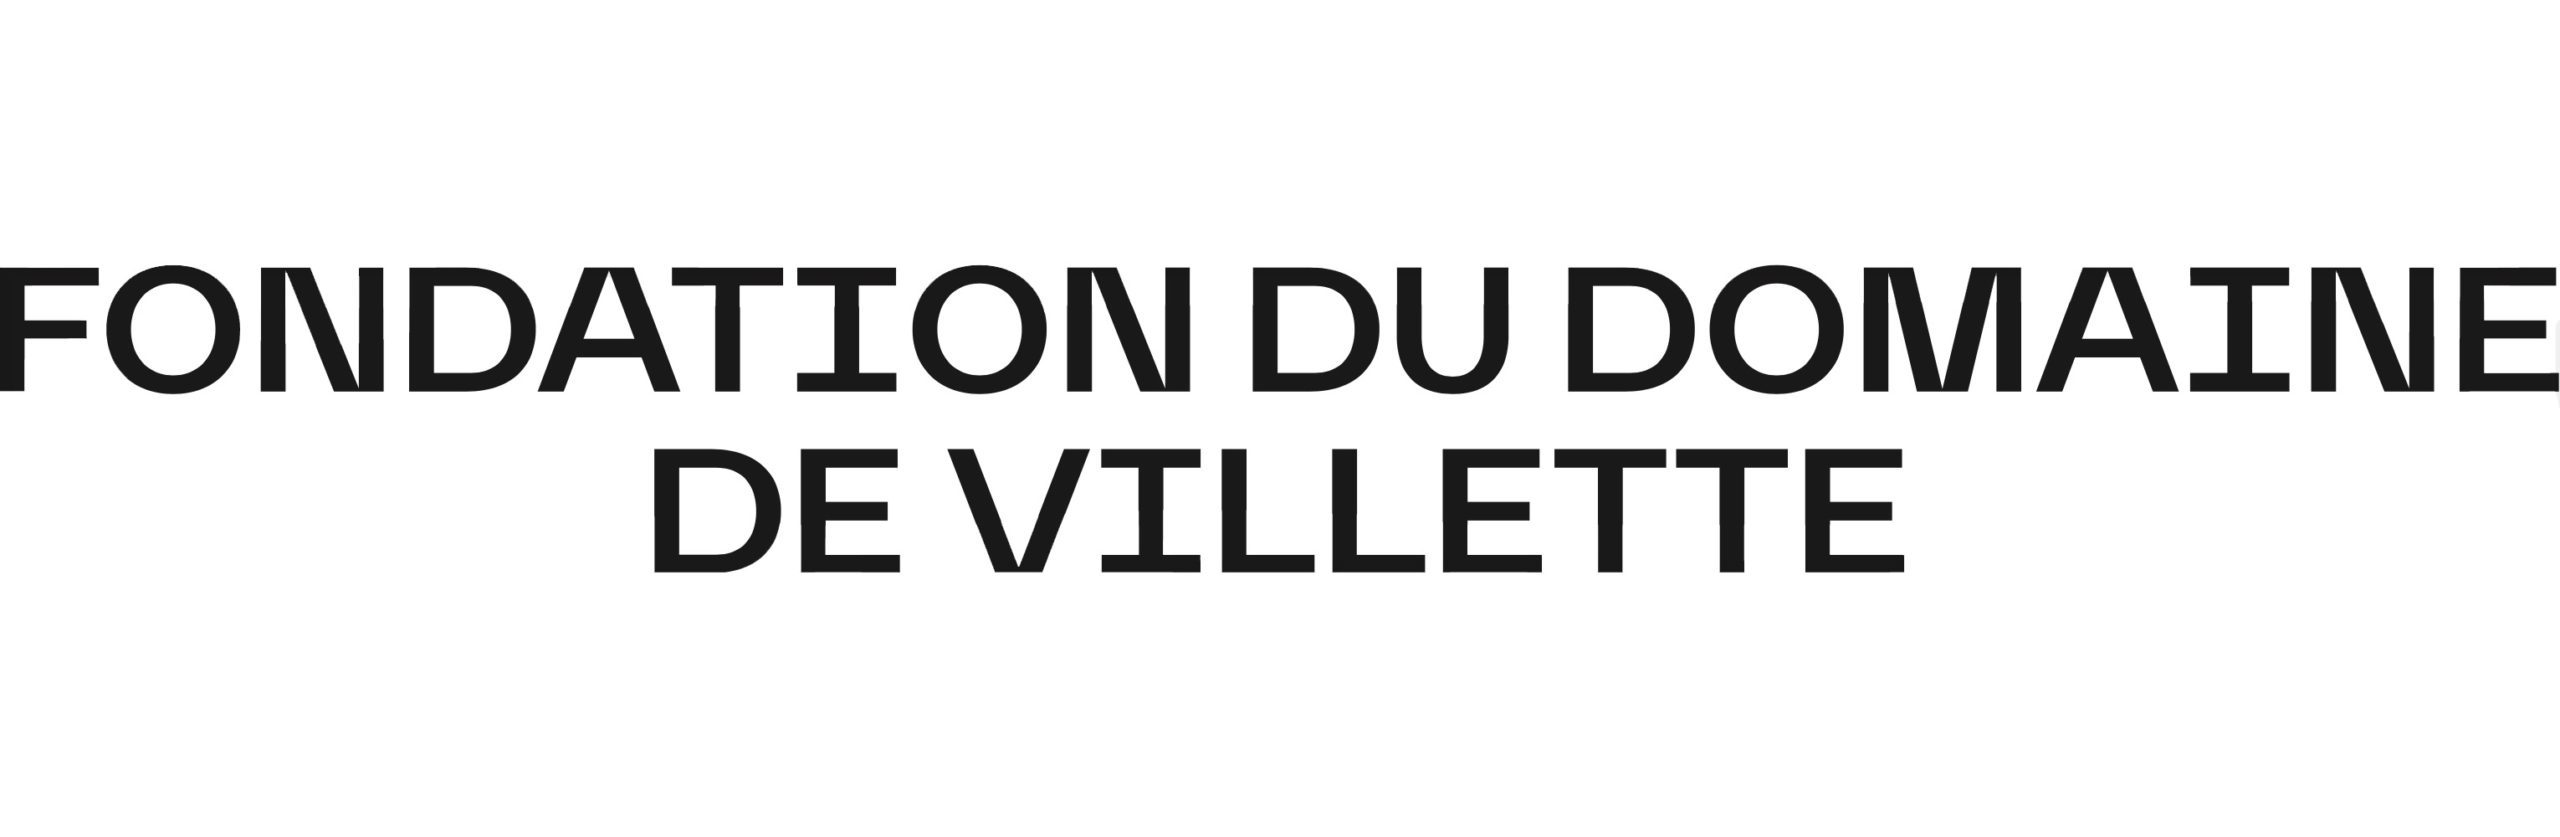 Fondation du domaine de Villette 